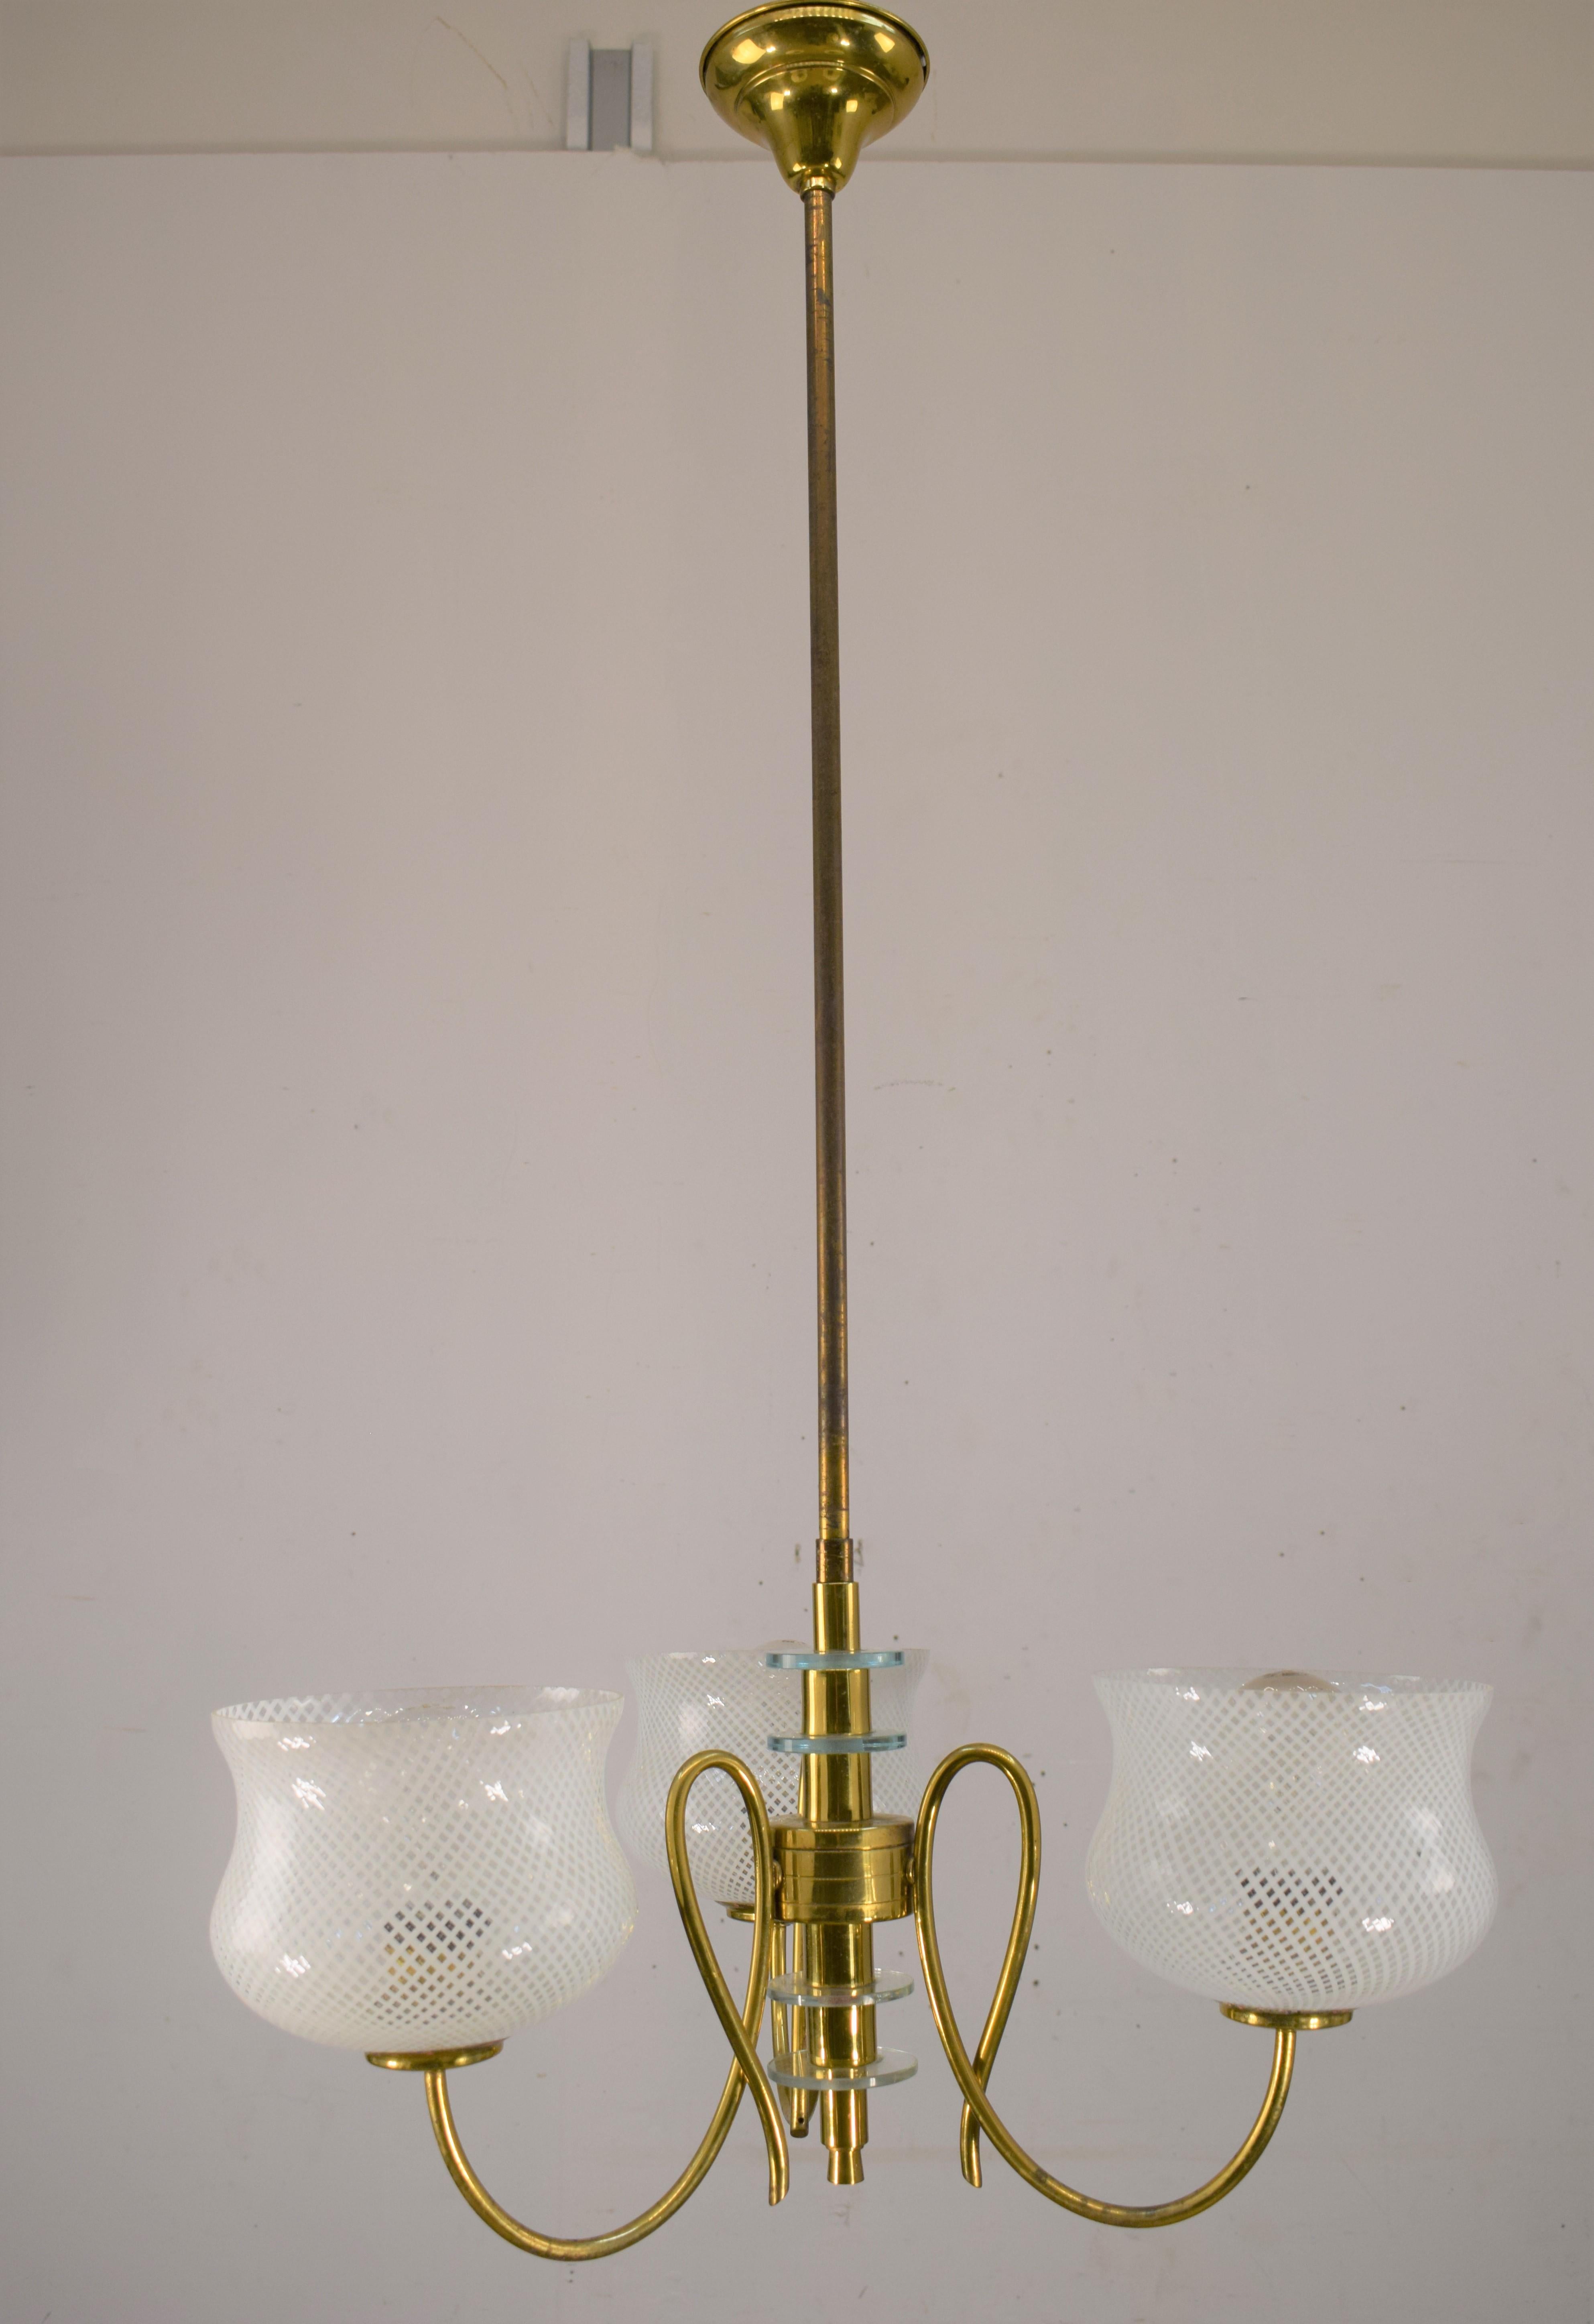 Venini chandelier, 1950s.
Dimensions: H= 96 cm; D=50 cm.